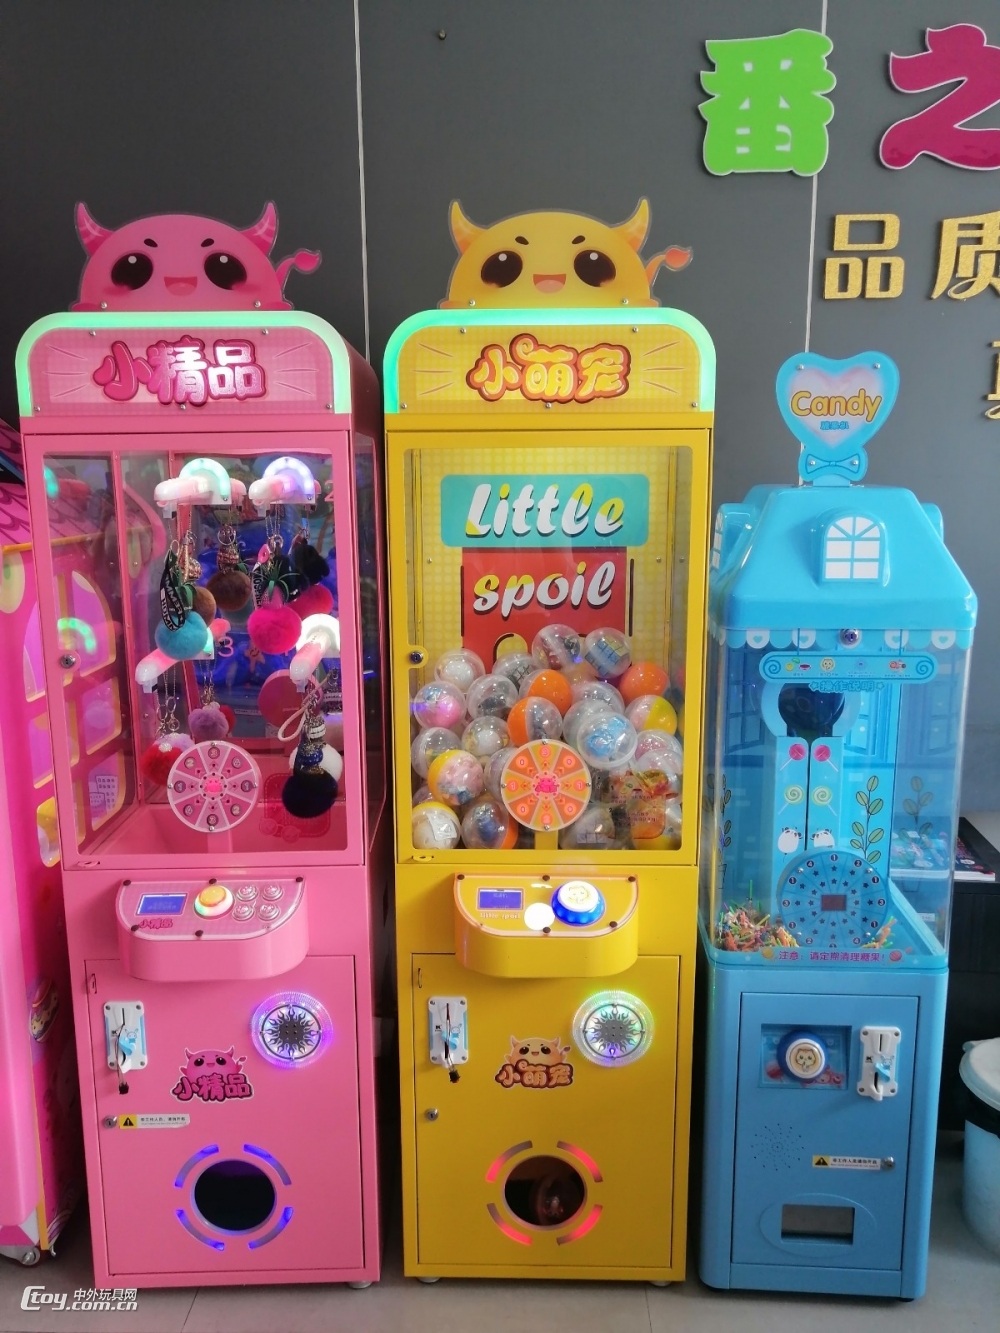 儿童精品机夹娃娃公仔机电玩城儿童游艺设备 乐园礼品机投放加盟